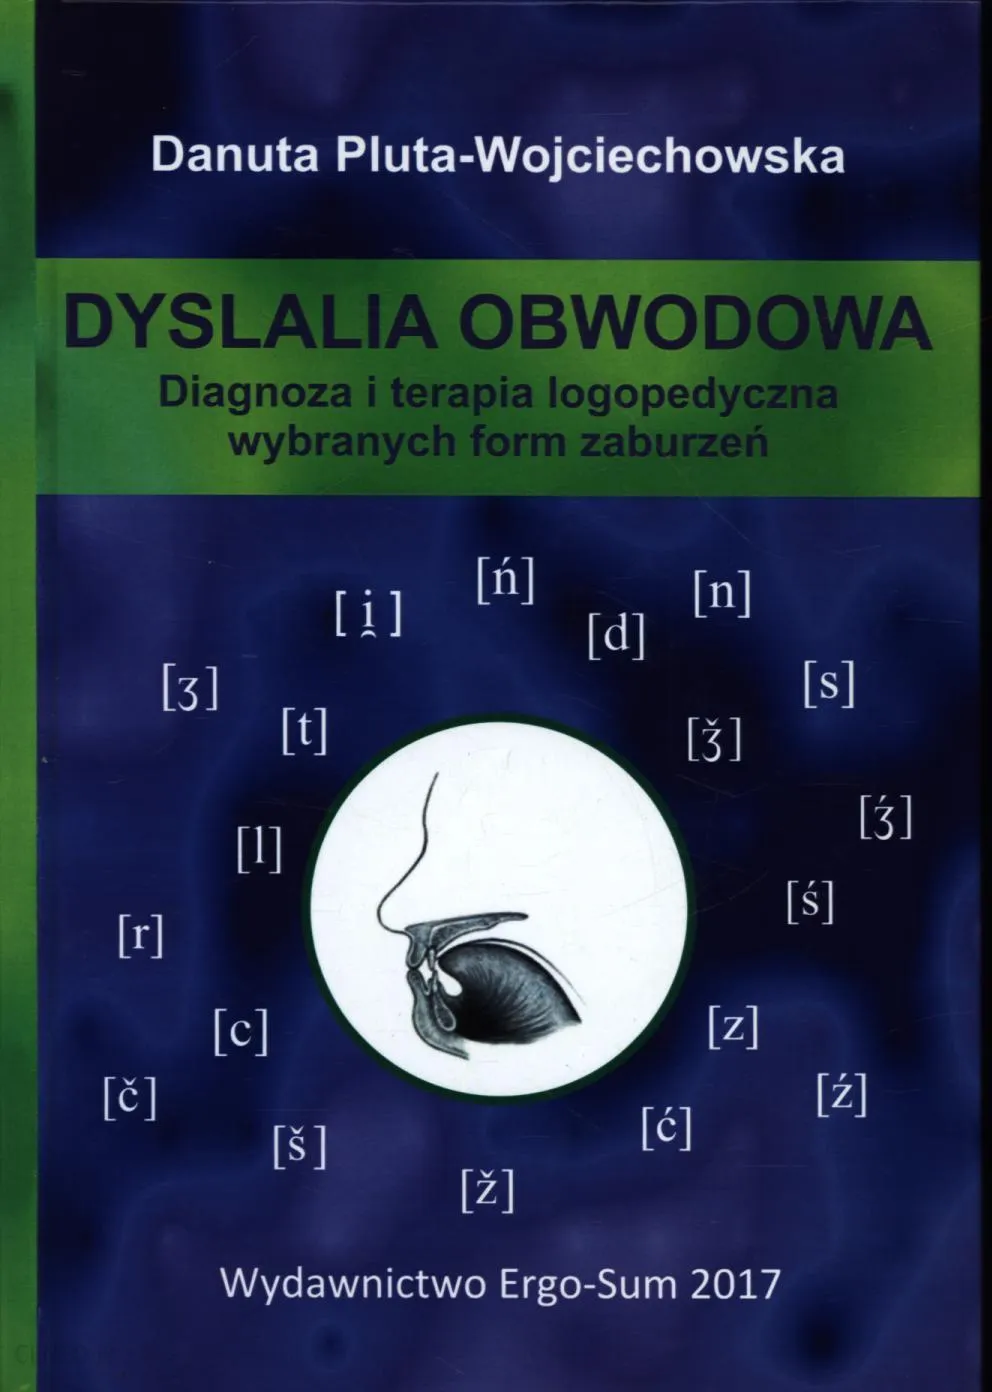 Danuta Pluta-Wojciechowska Dyslalia obwodowa : diagnoza i terapia logopedyczna wybranych form zaburzeń